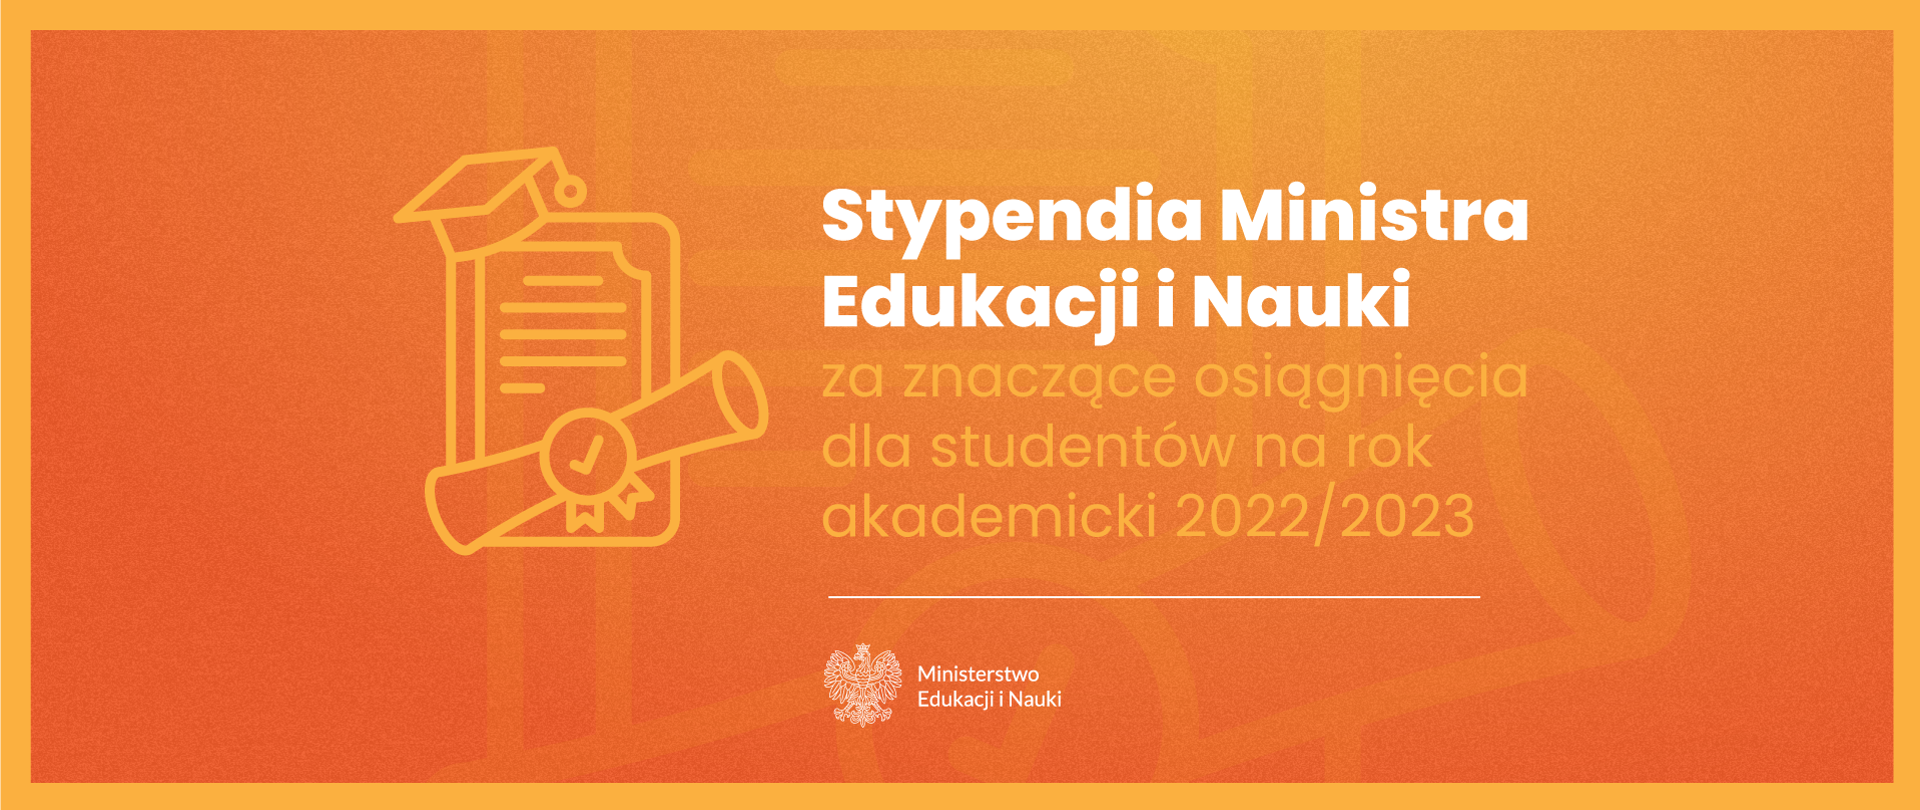 Grafika - na żółtym tle stylizowany dyplom i napis Stypendia Ministra Edukacji i Nauki dla studentów za znaczące osiągnięcia na rok 2022 / 2023.